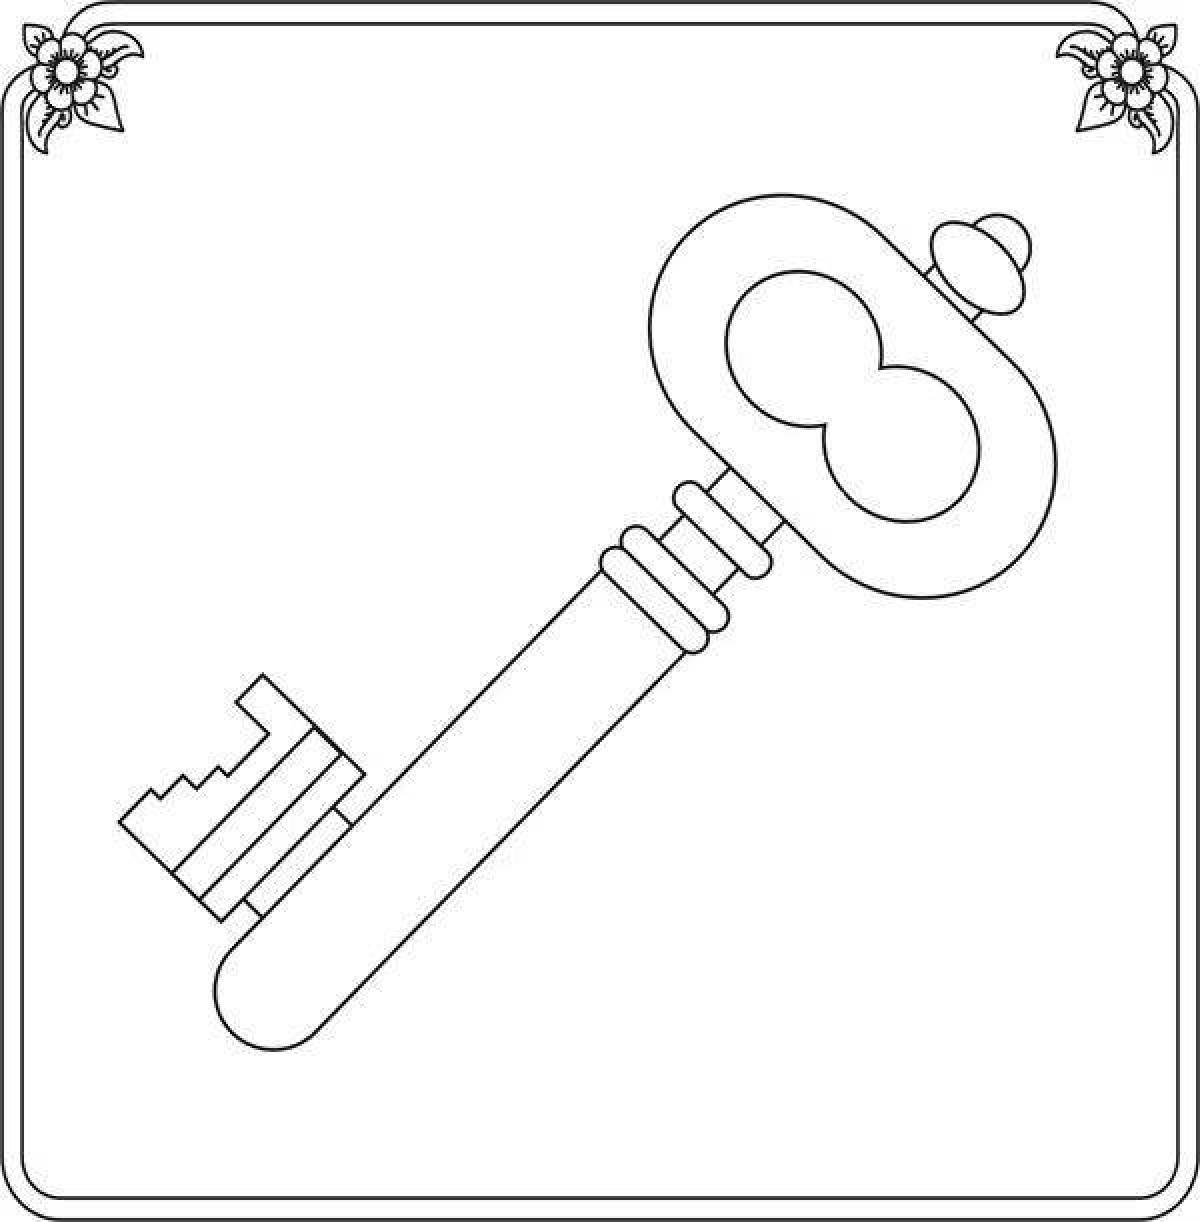 Child key #13